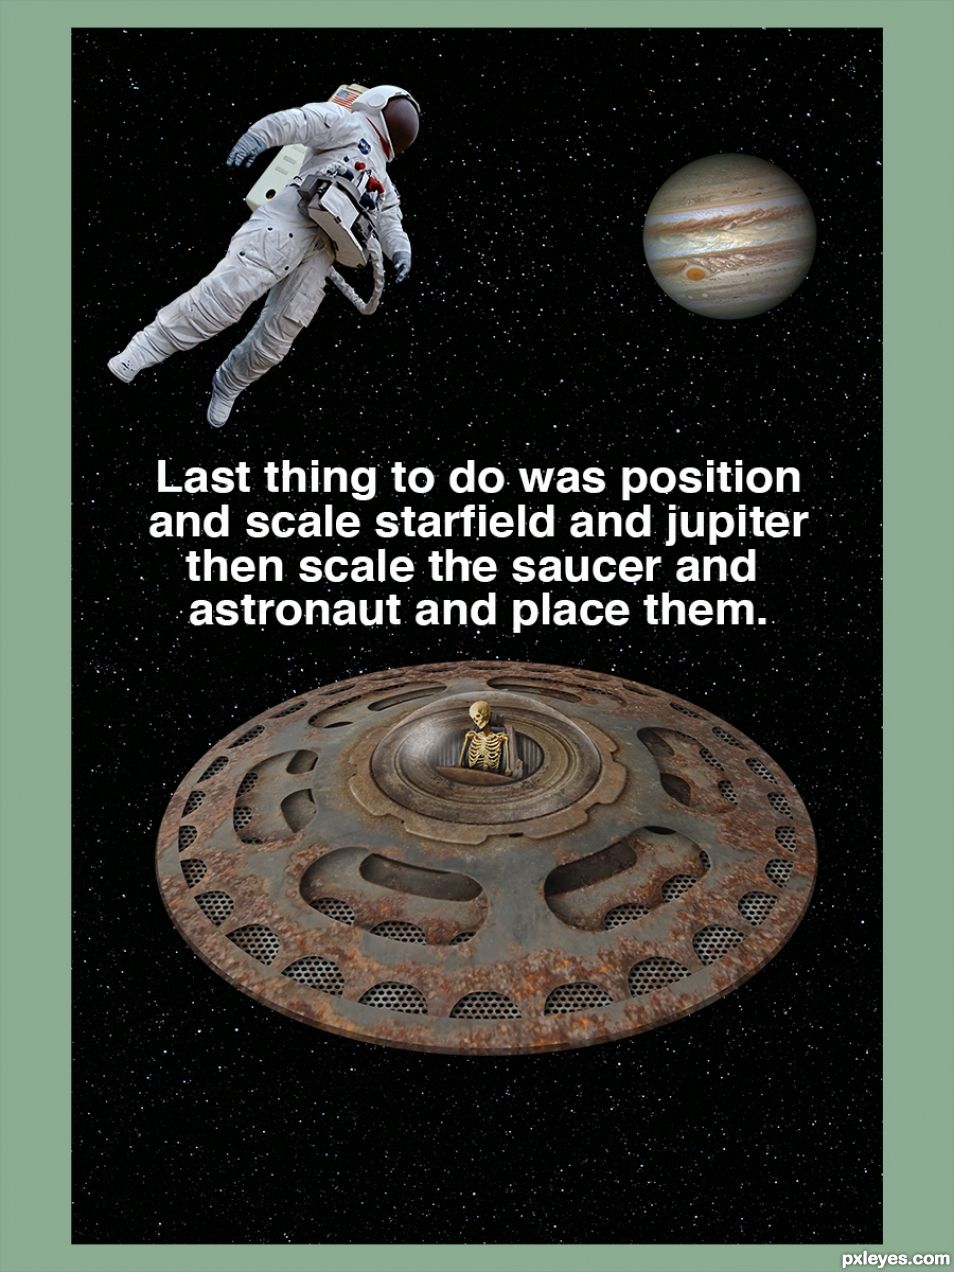 Creation of Found Near Jupiter: Step 4